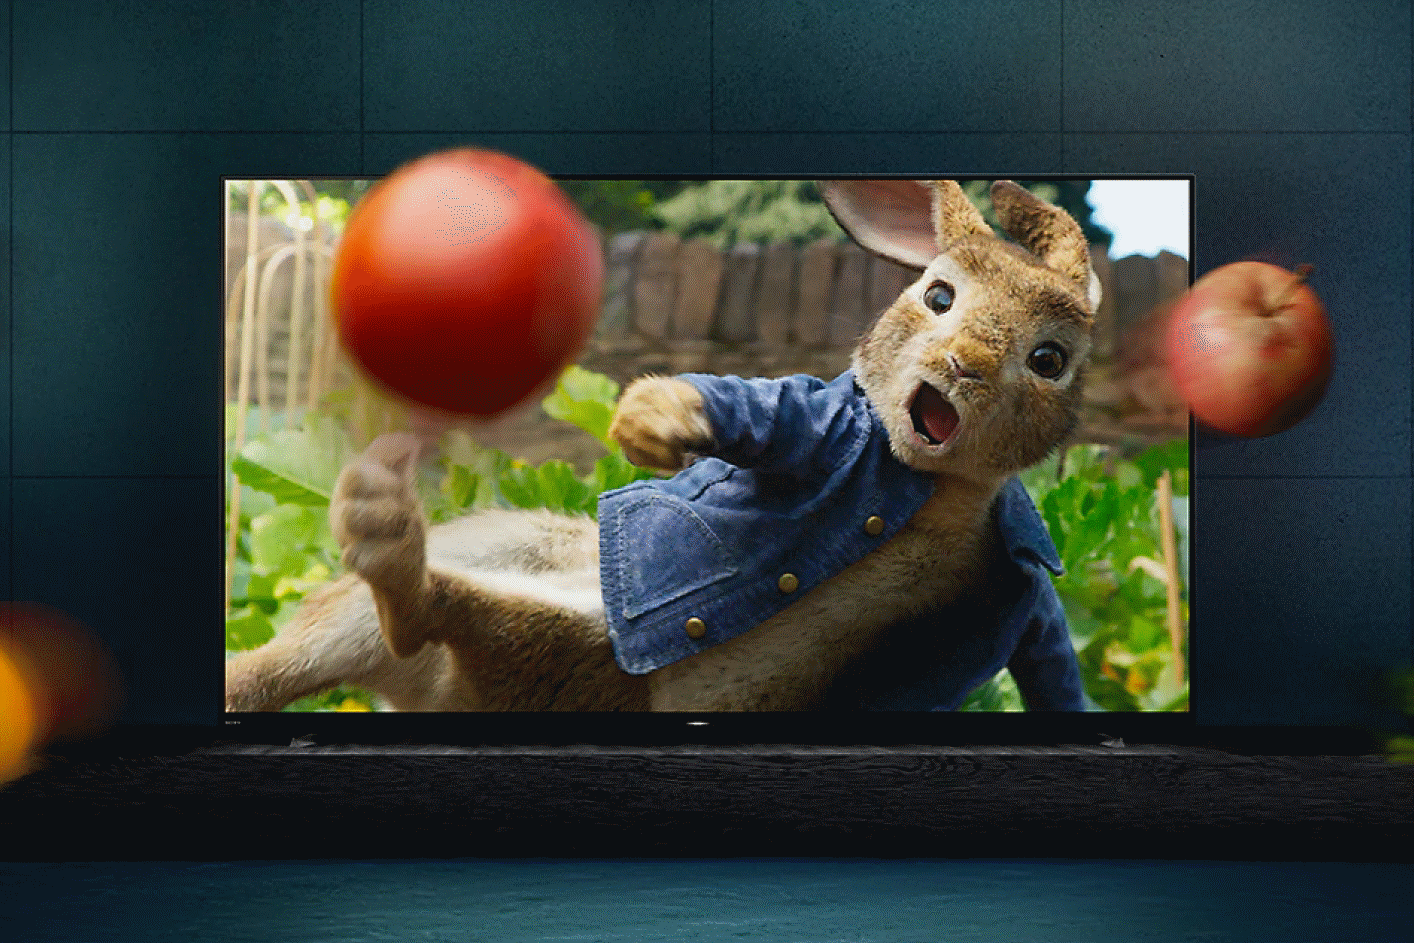 تلفزيون BRAVIA على قاعدة يُعرض فيلم Peter Rabbit على شاشته وتتطاير منه فواكه وخضروات.